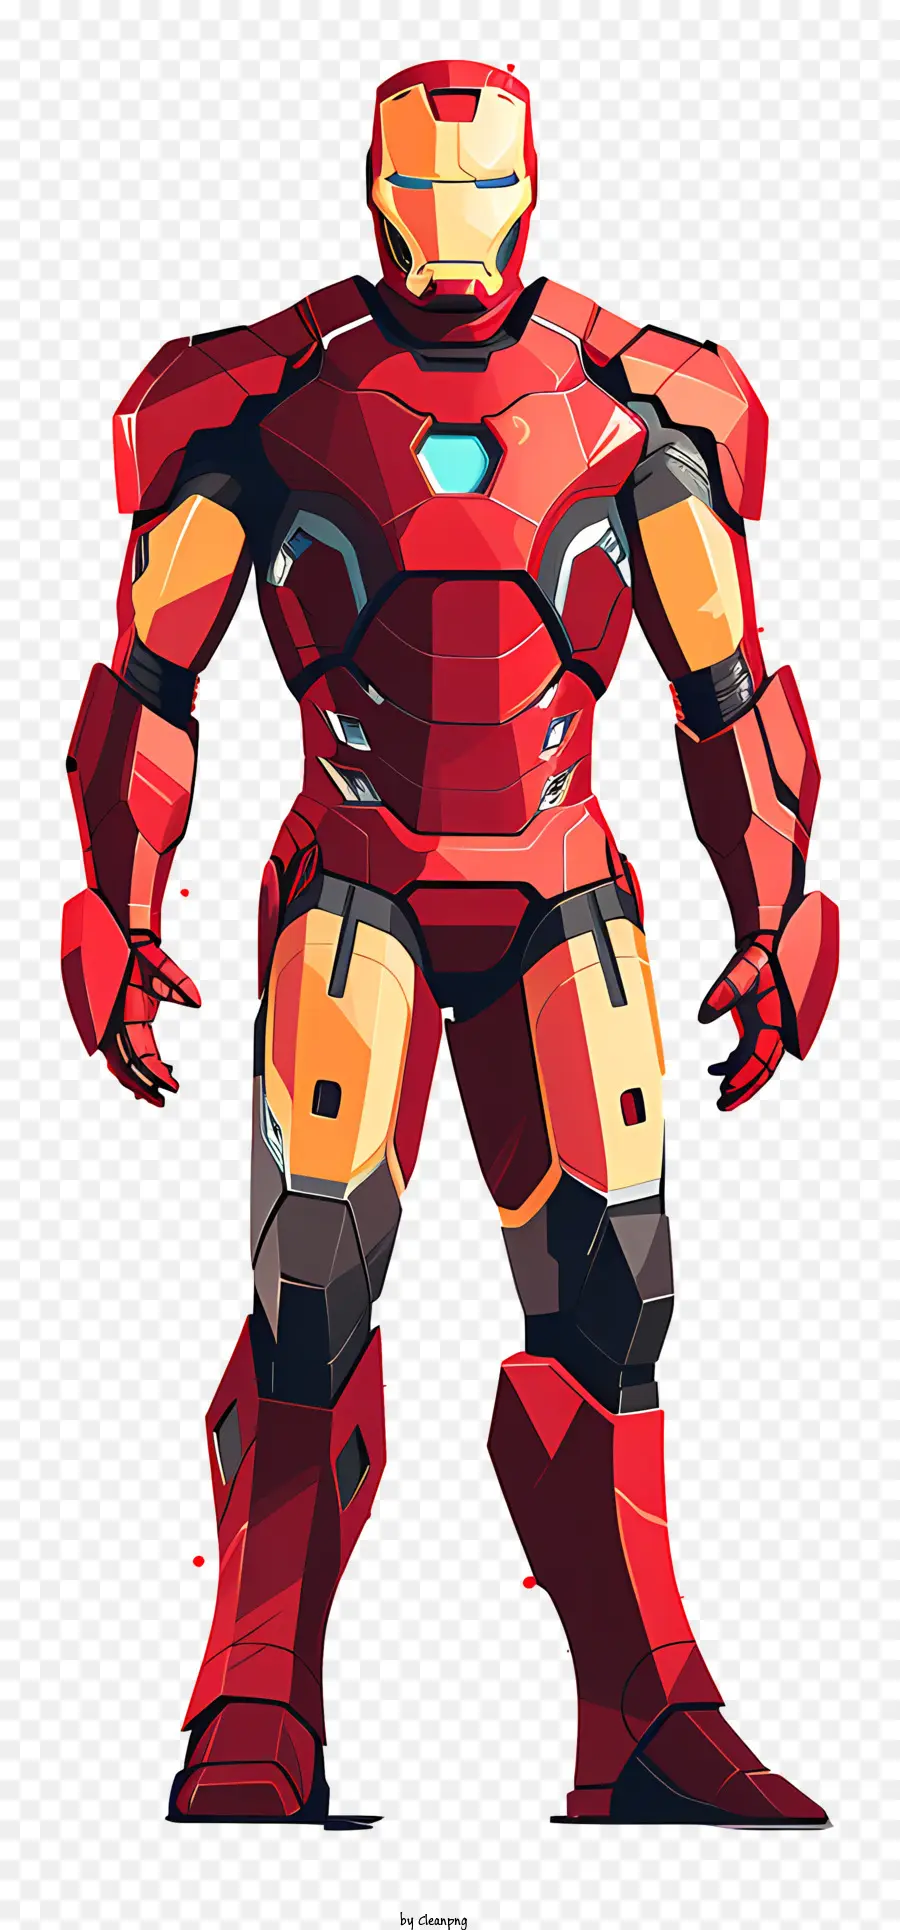 người Sắt - Hình ảnh của Iron Man trong bộ đồ màu đỏ